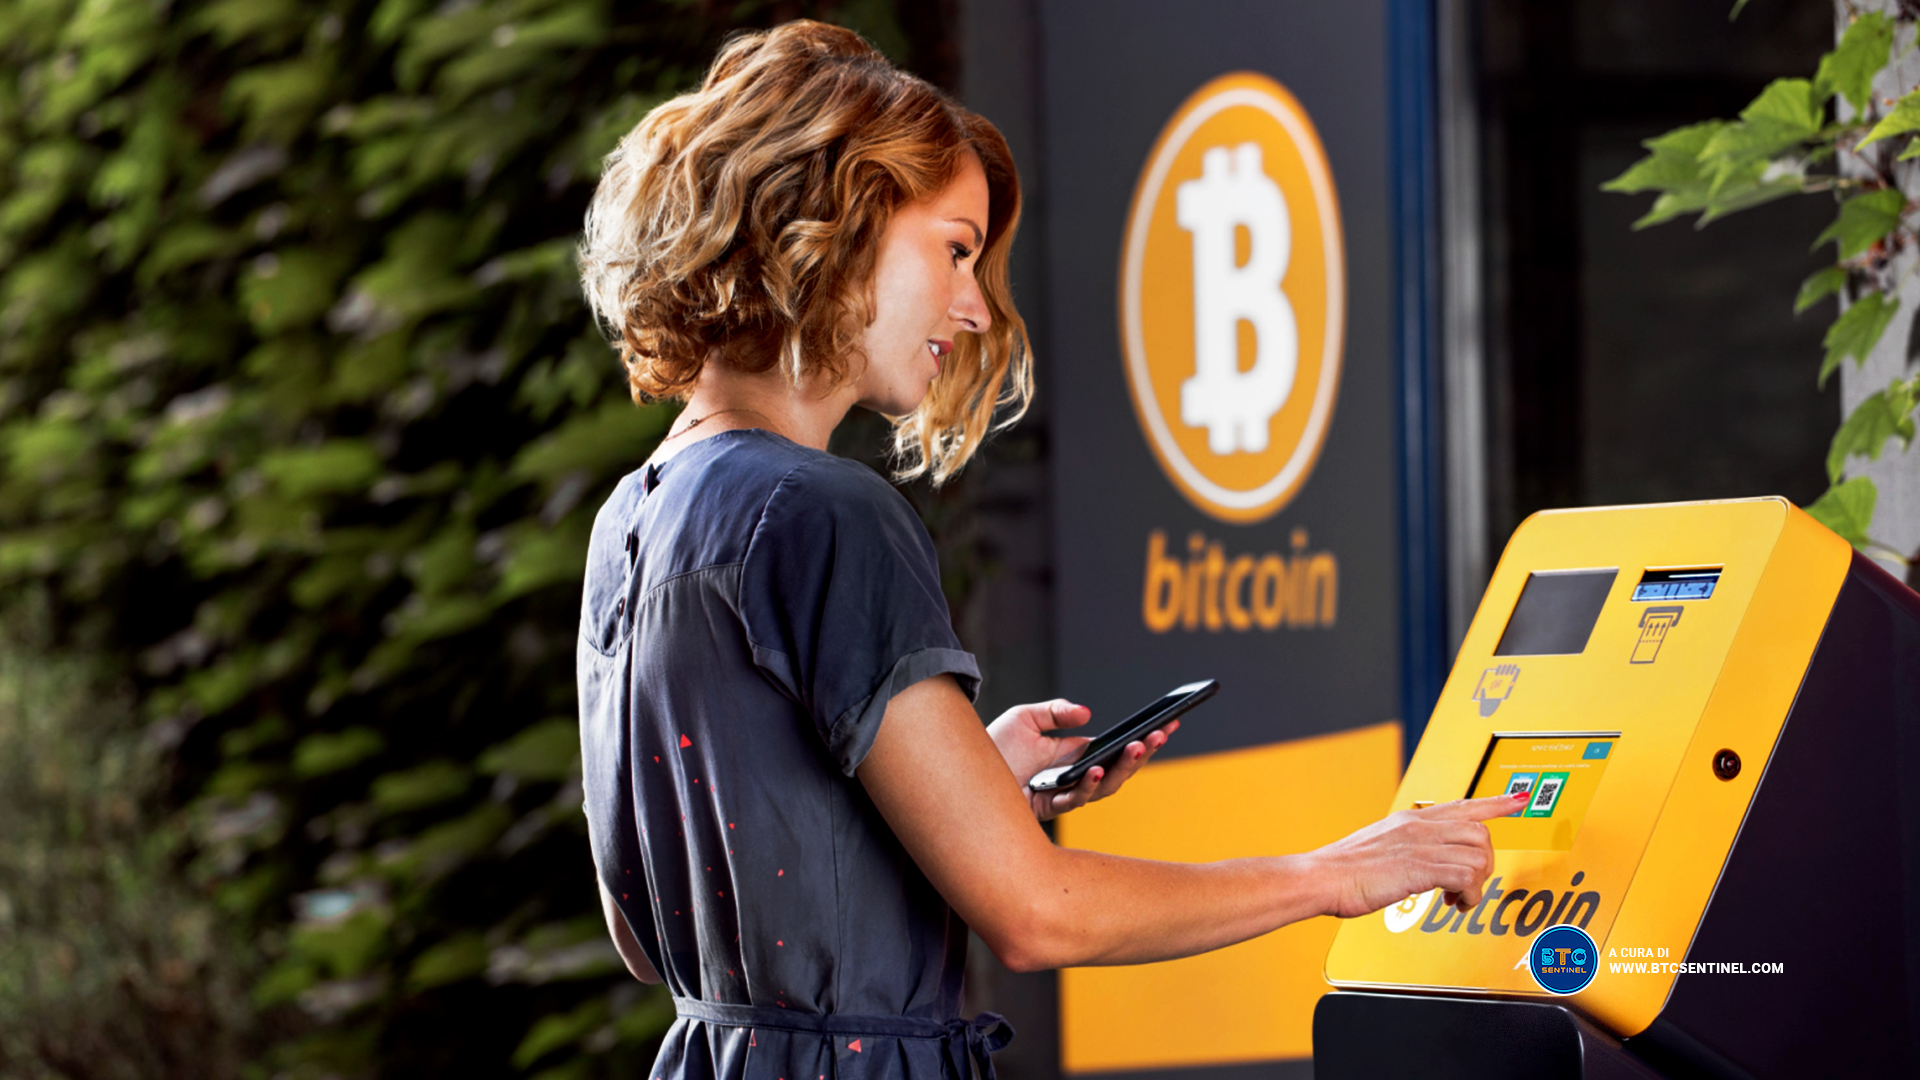 L'azienda di ATM di criptovalute Bitcoin Depot conclude accordo per puntare a Wall Street